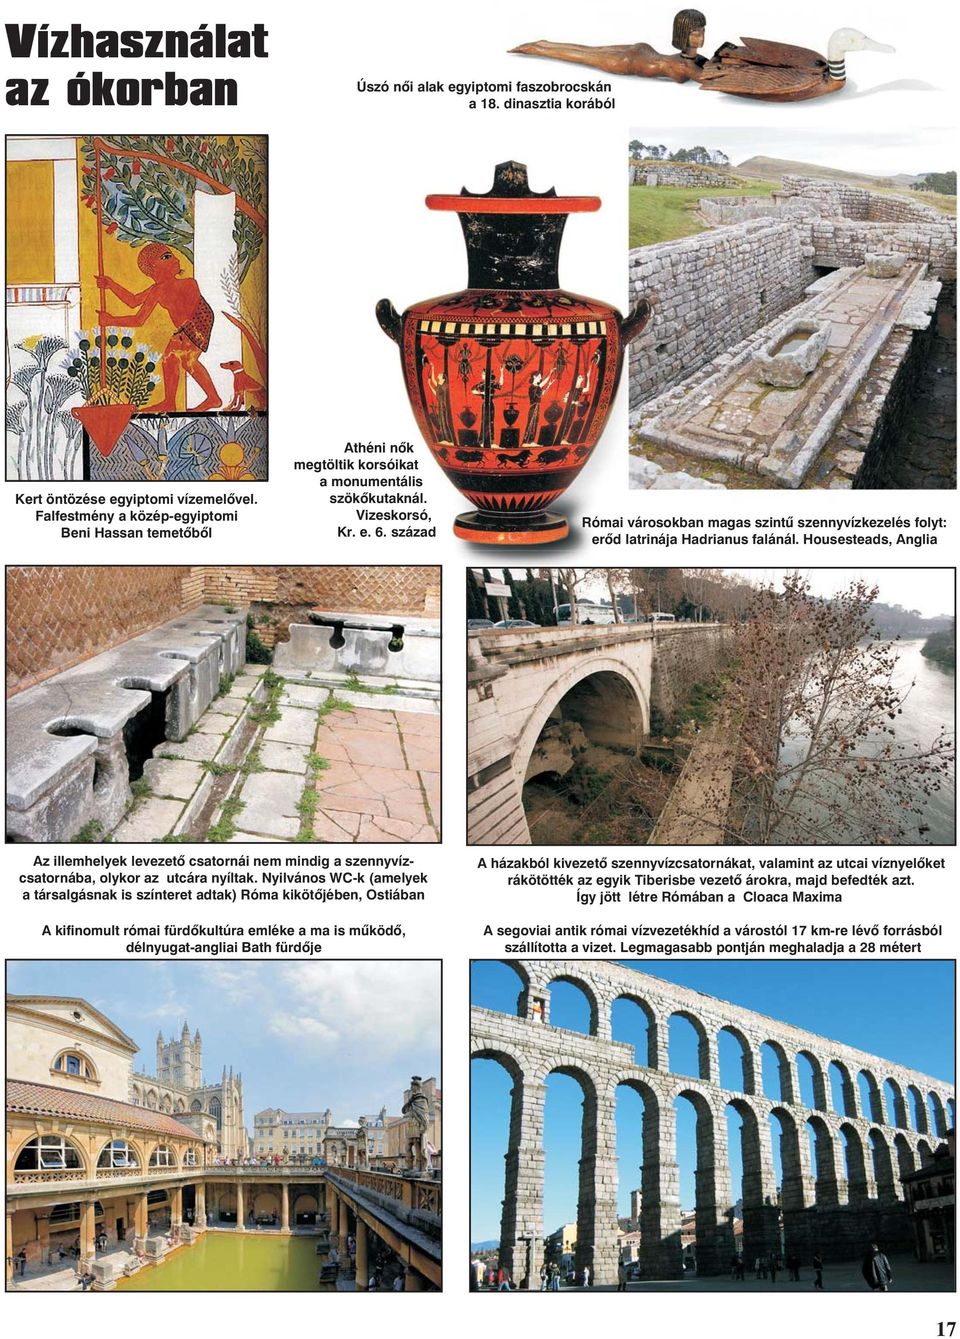 század Római városokban magas szintû szennyvízkezelés folyt: erõd latrinája Hadrianus falánál.